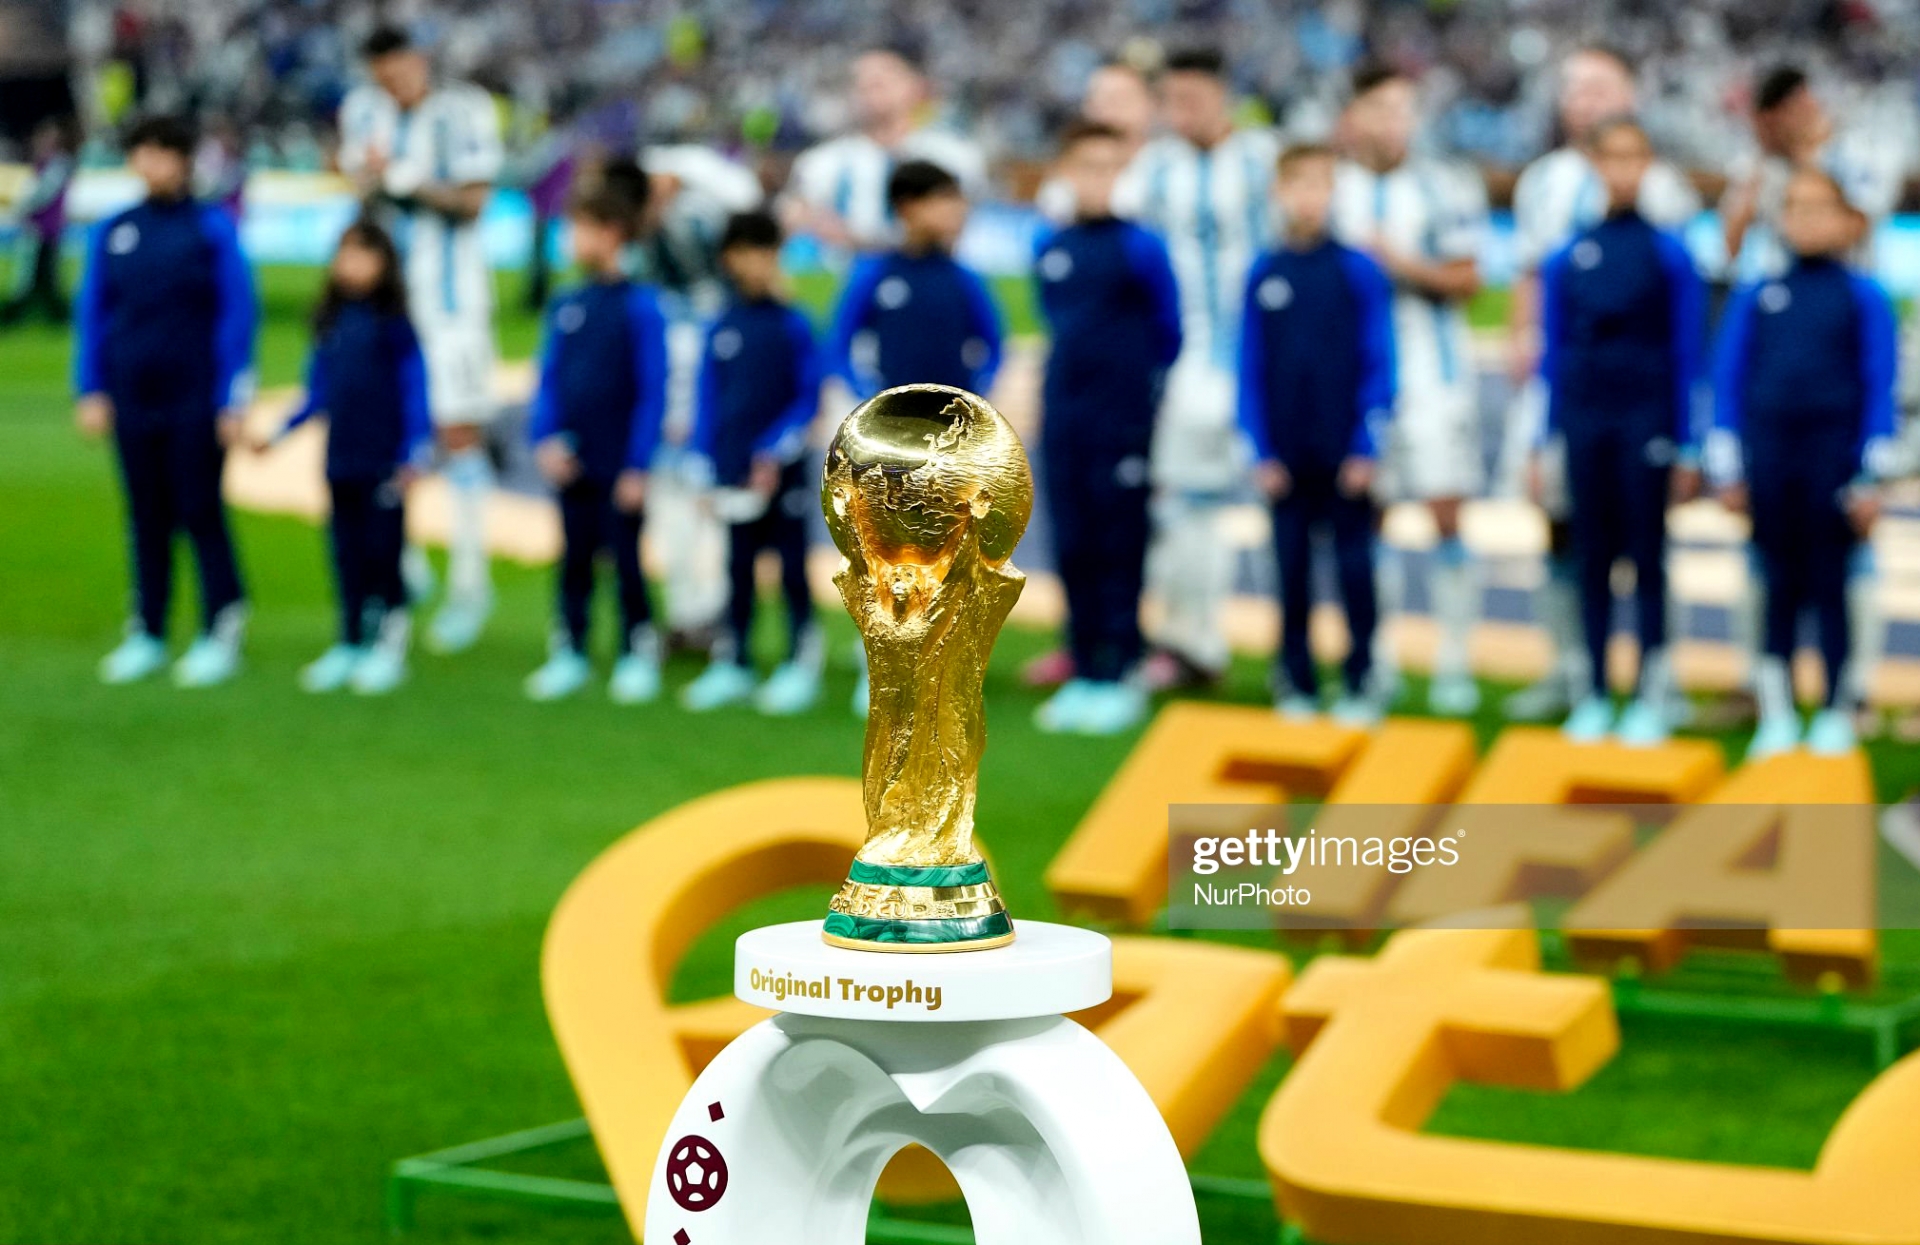 Đêm 18-12 (theo giờ Việt Nam), Argentina và Pháp bước vào trận tranh ngôi vô địch World Cup 2022 trên sân vận động Lusail. Sau khởi đầu không thuận lợi, Messi cùng các đồng đội đã chơi thăng hoa để đến rất gần chiếc cúp vàng danh giá. Trong khi đó, Pháp cũng buộc phải thắng canh bạc nếu muốn có lần thứ hai liên tiếp ngự trị đỉnh cao bóng đá thế giới.